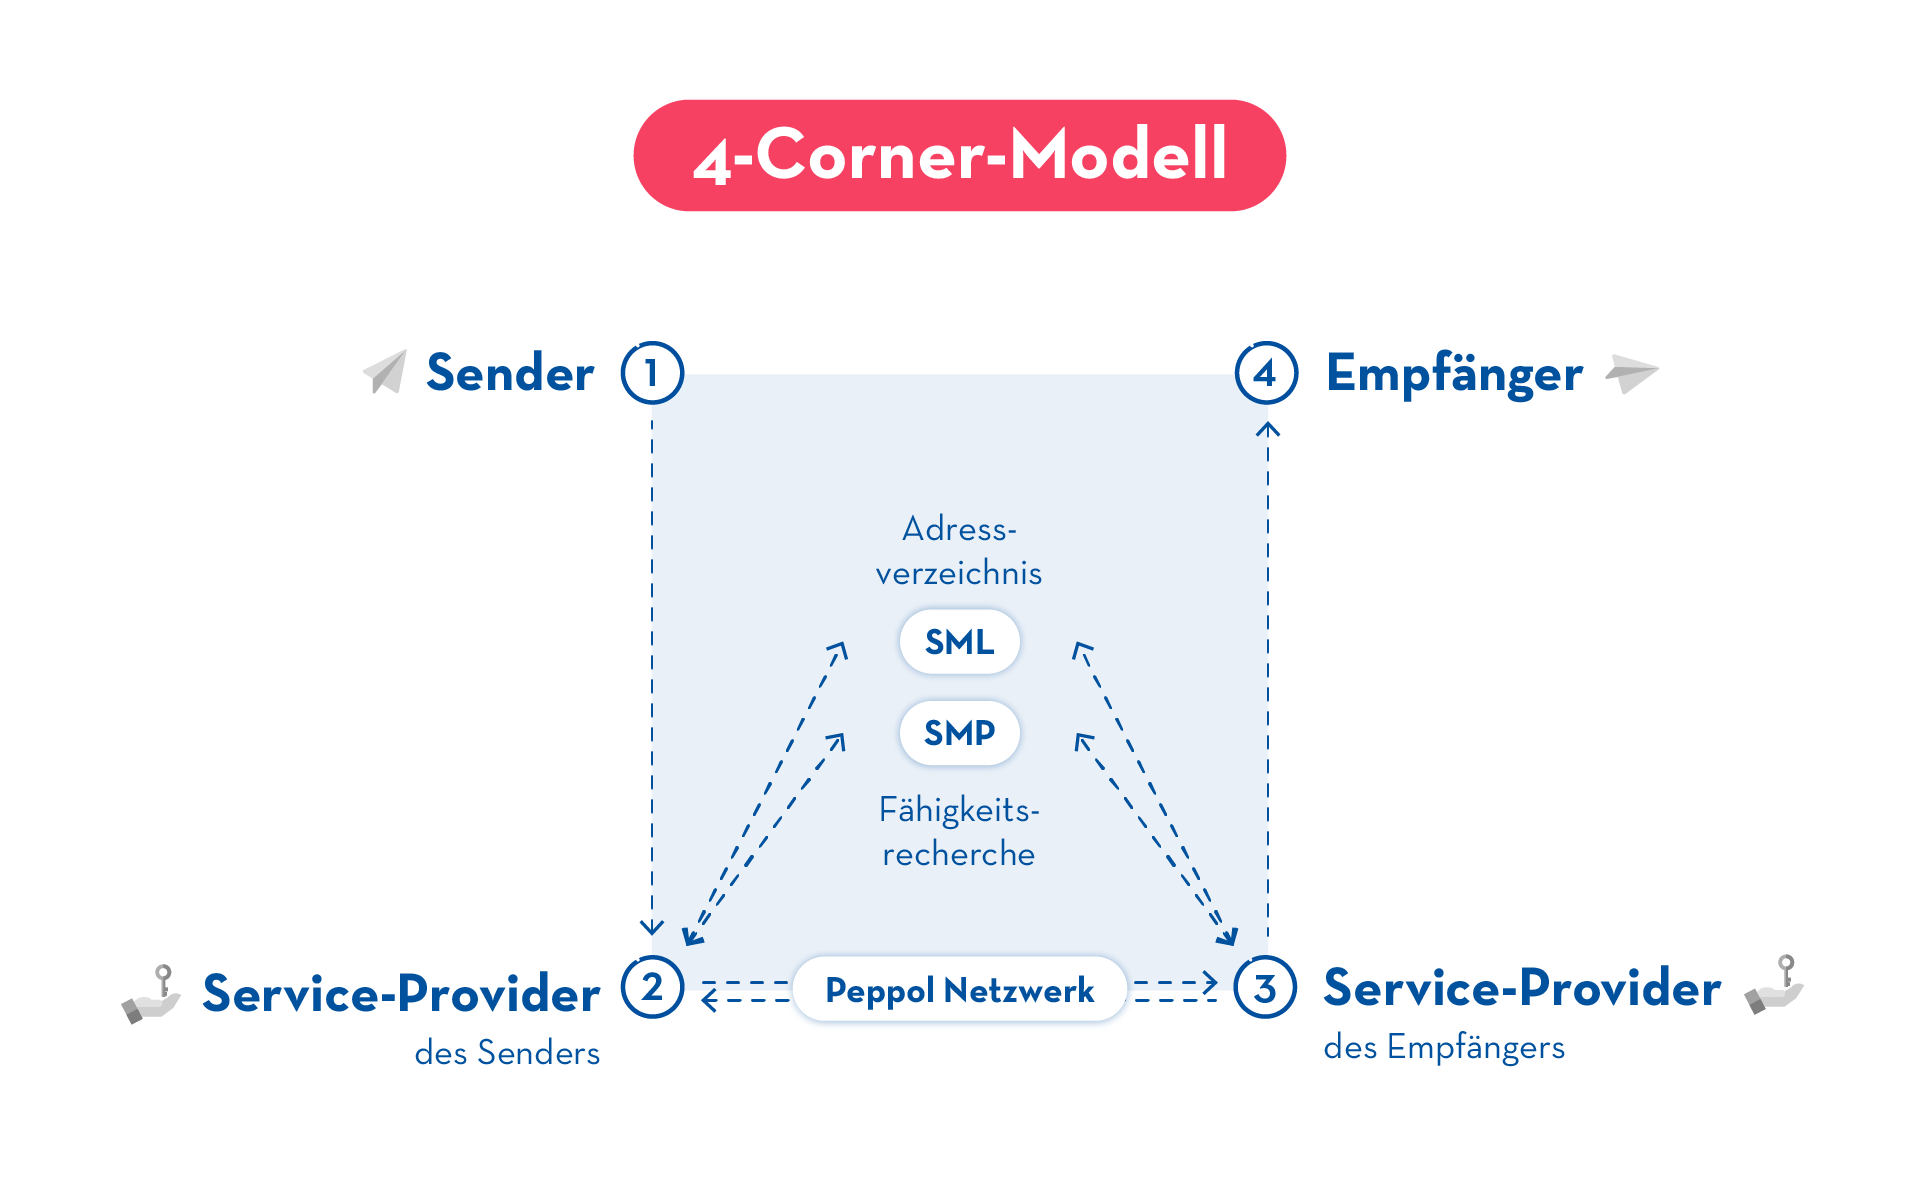 Elektronischer Rechnungsversand über das 4-Corner-Modell im PEPPOL-Netzwerk